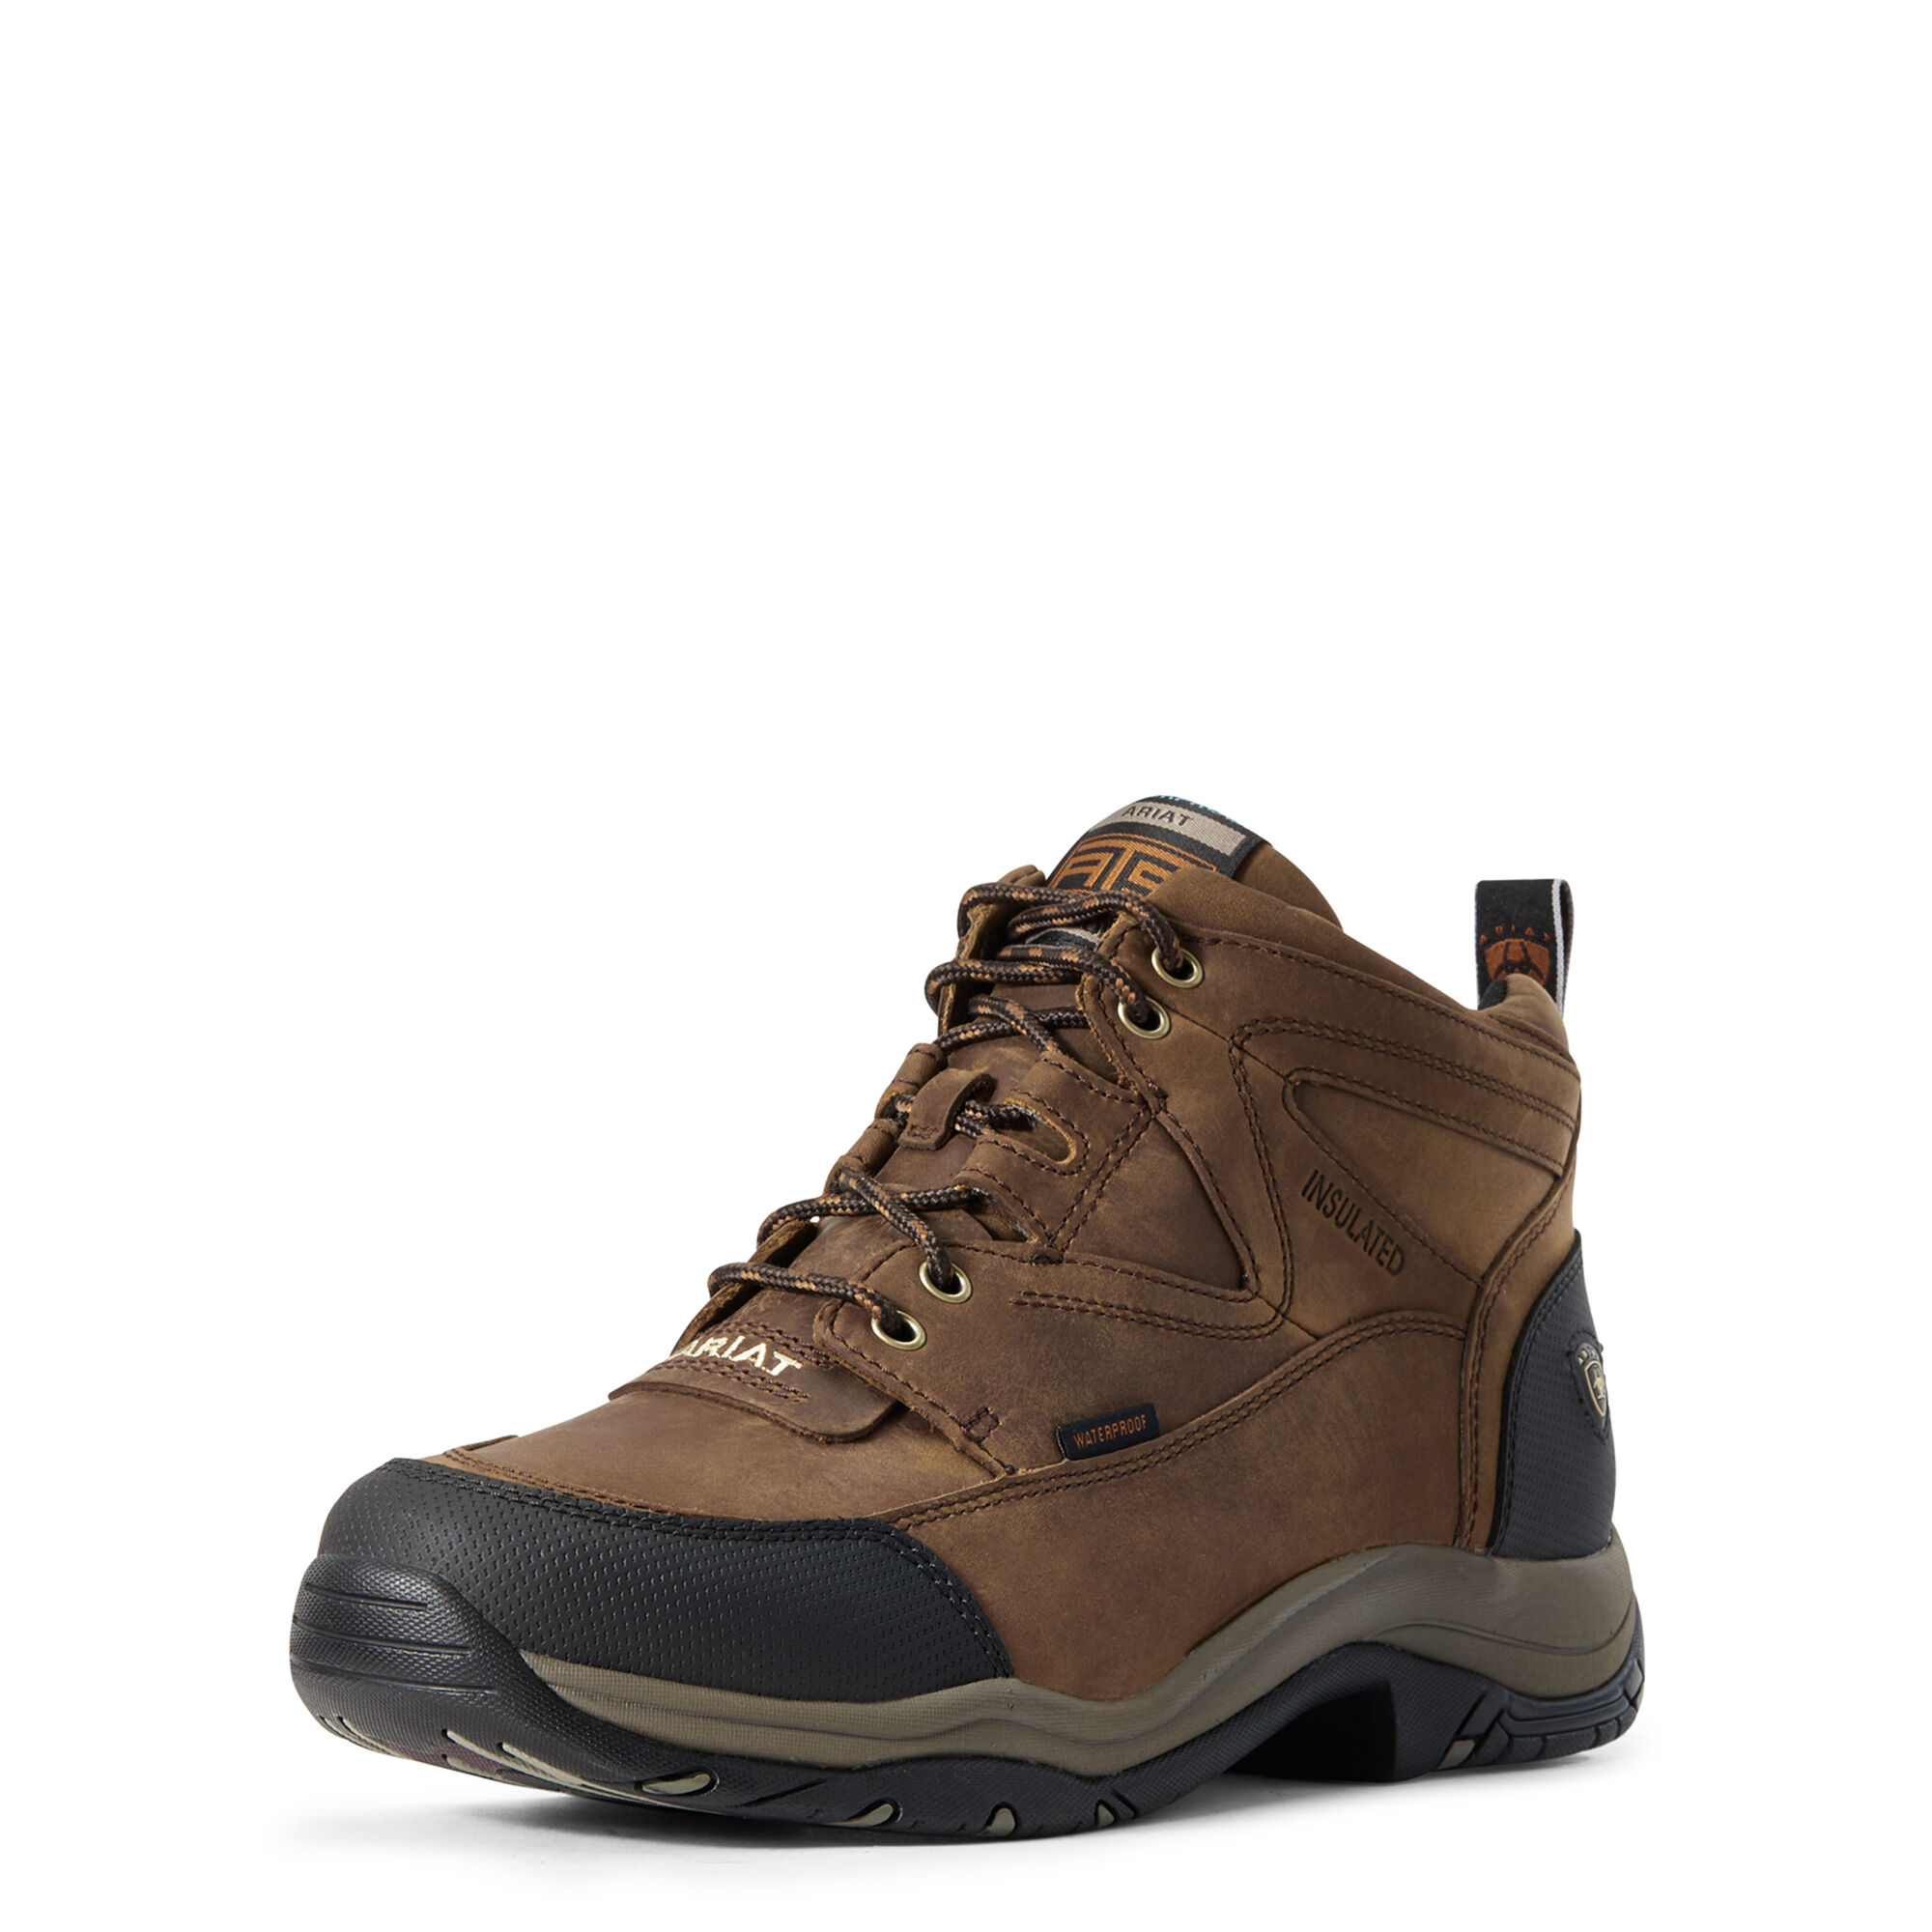 Men's Hiking Boots \u0026 Outdoor Footwear 